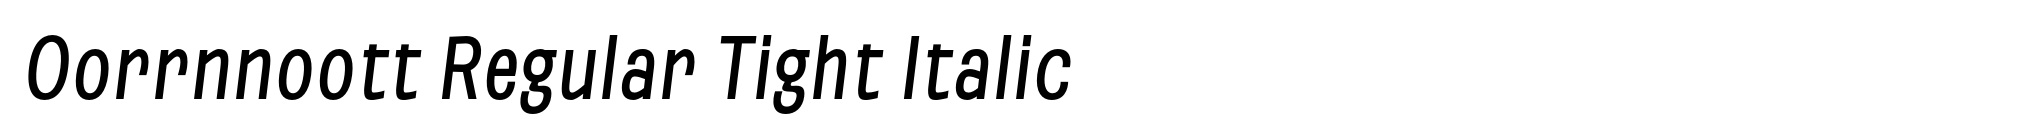 Oorrnnoott Regular Tight Italic image